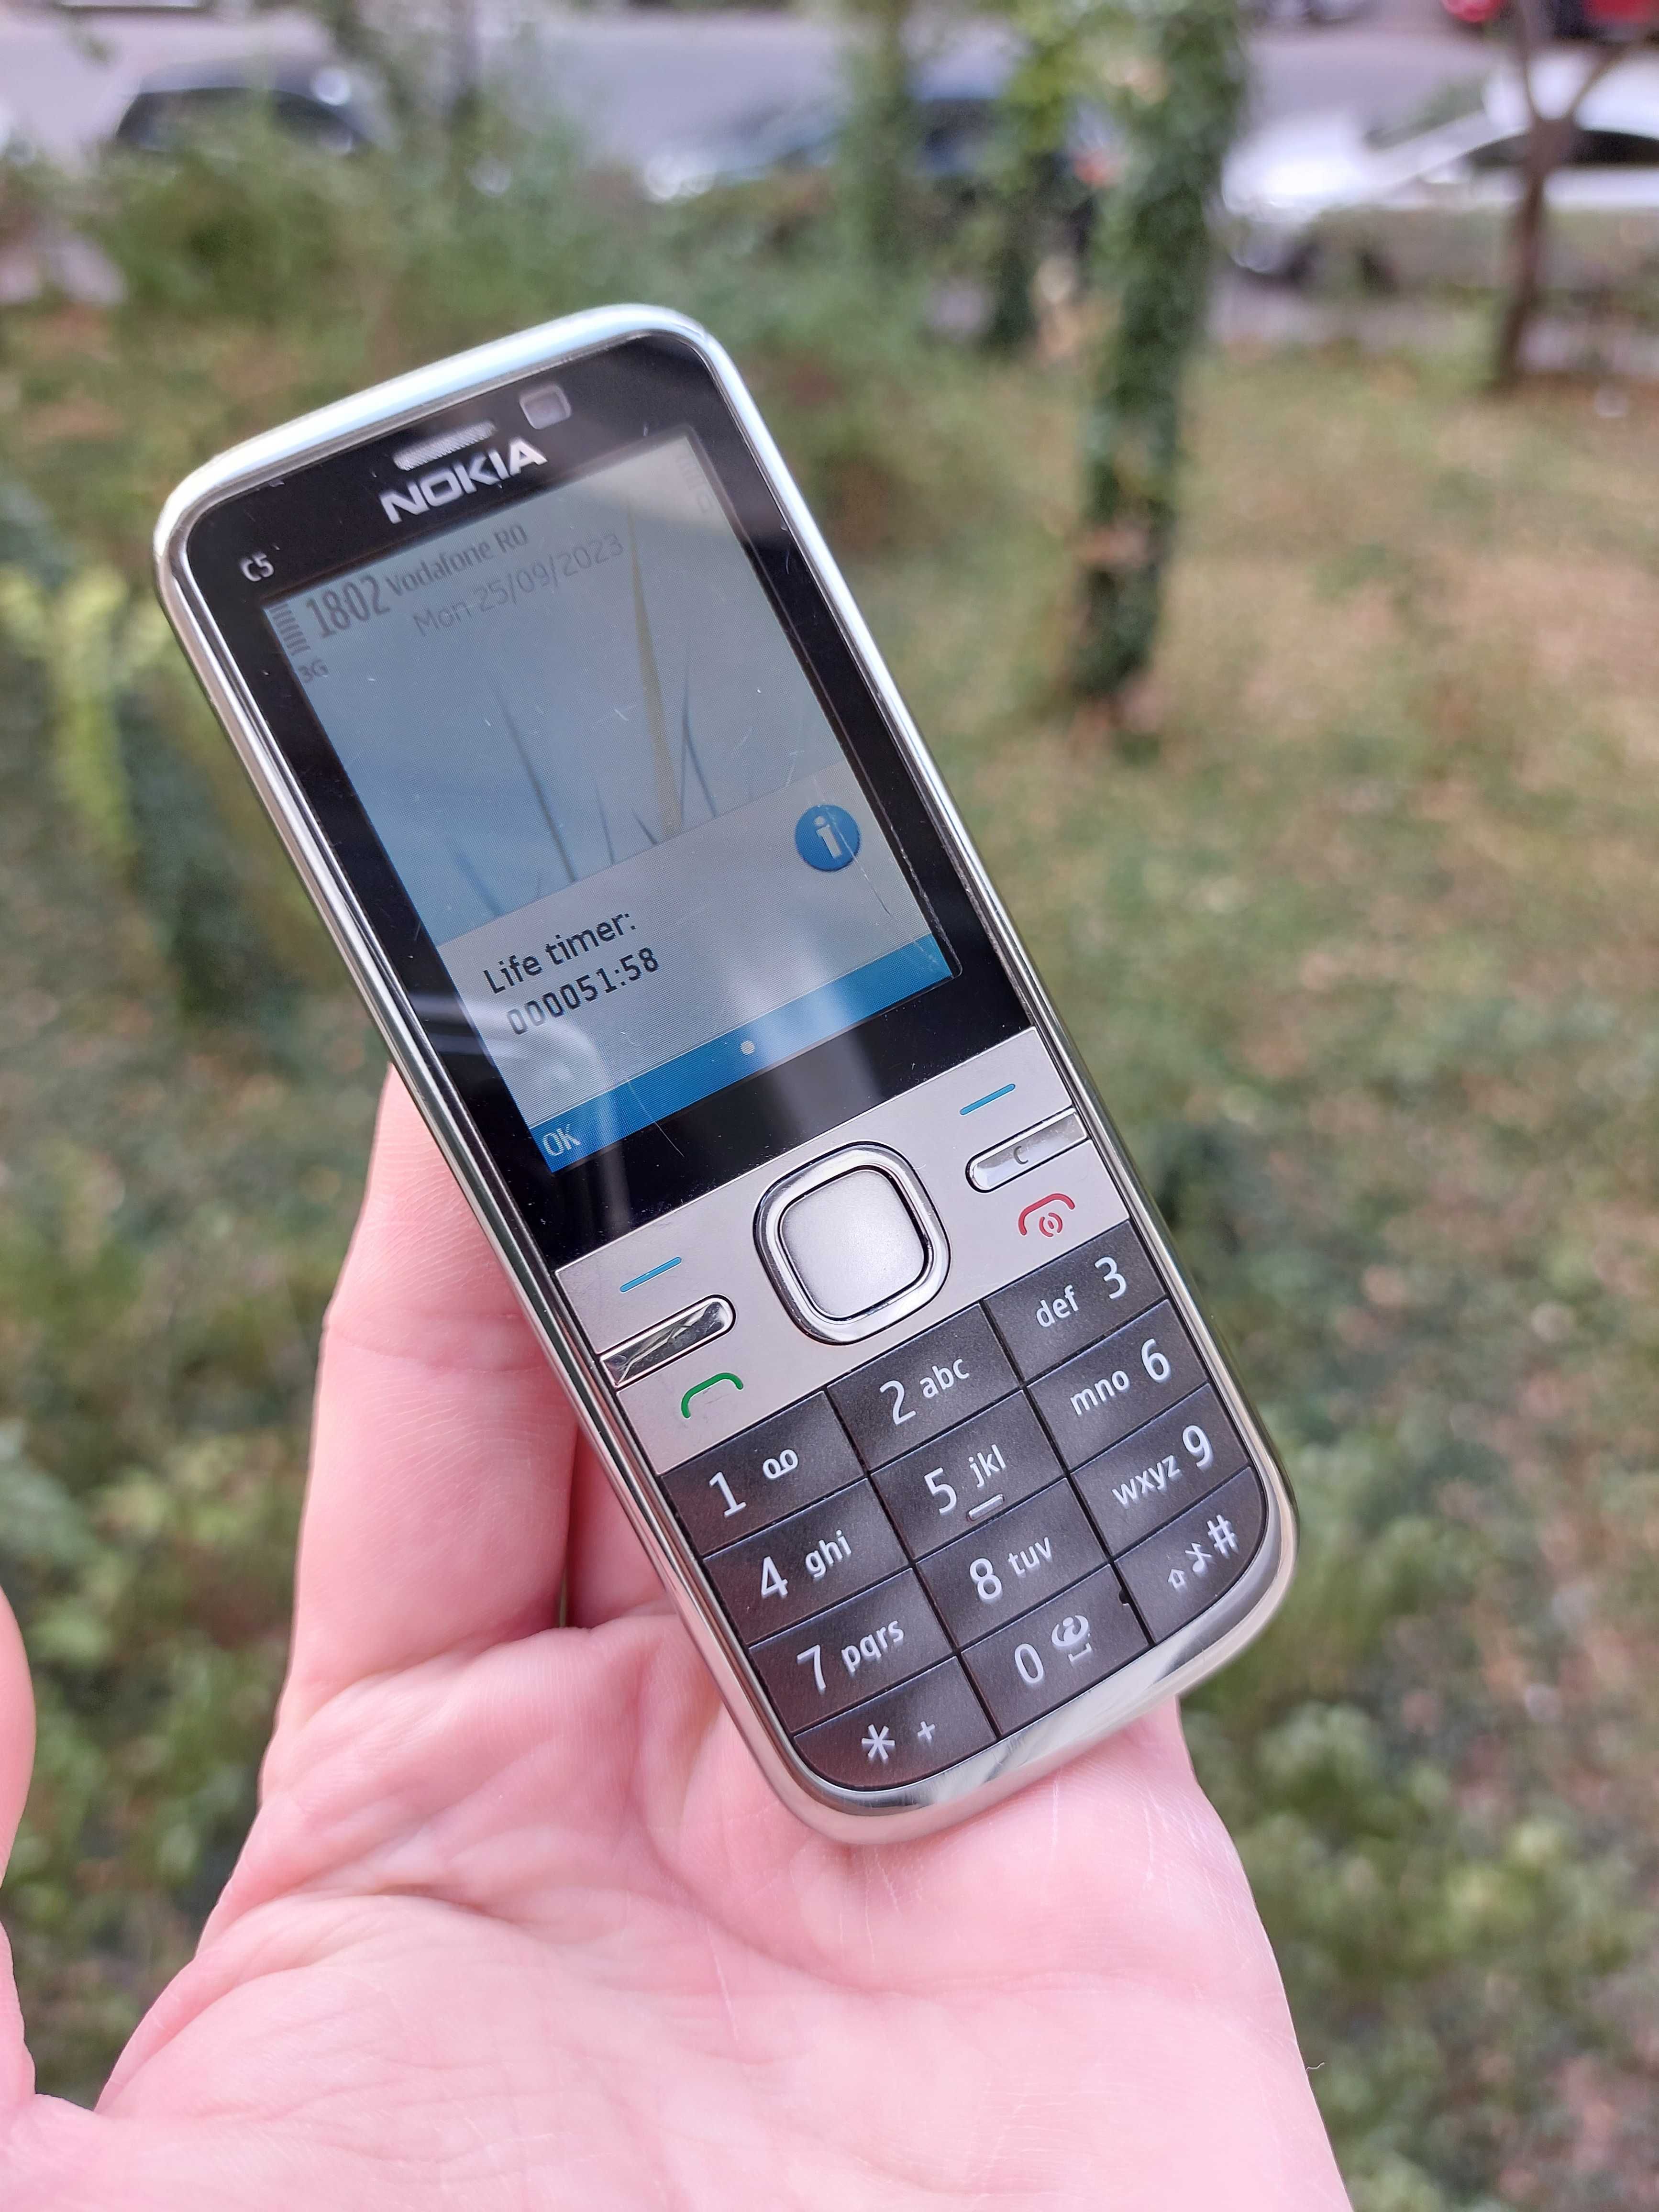 Nokia C5 orig Hungary metalic decodat 2011 cu doar 51 ore vorbit pe el